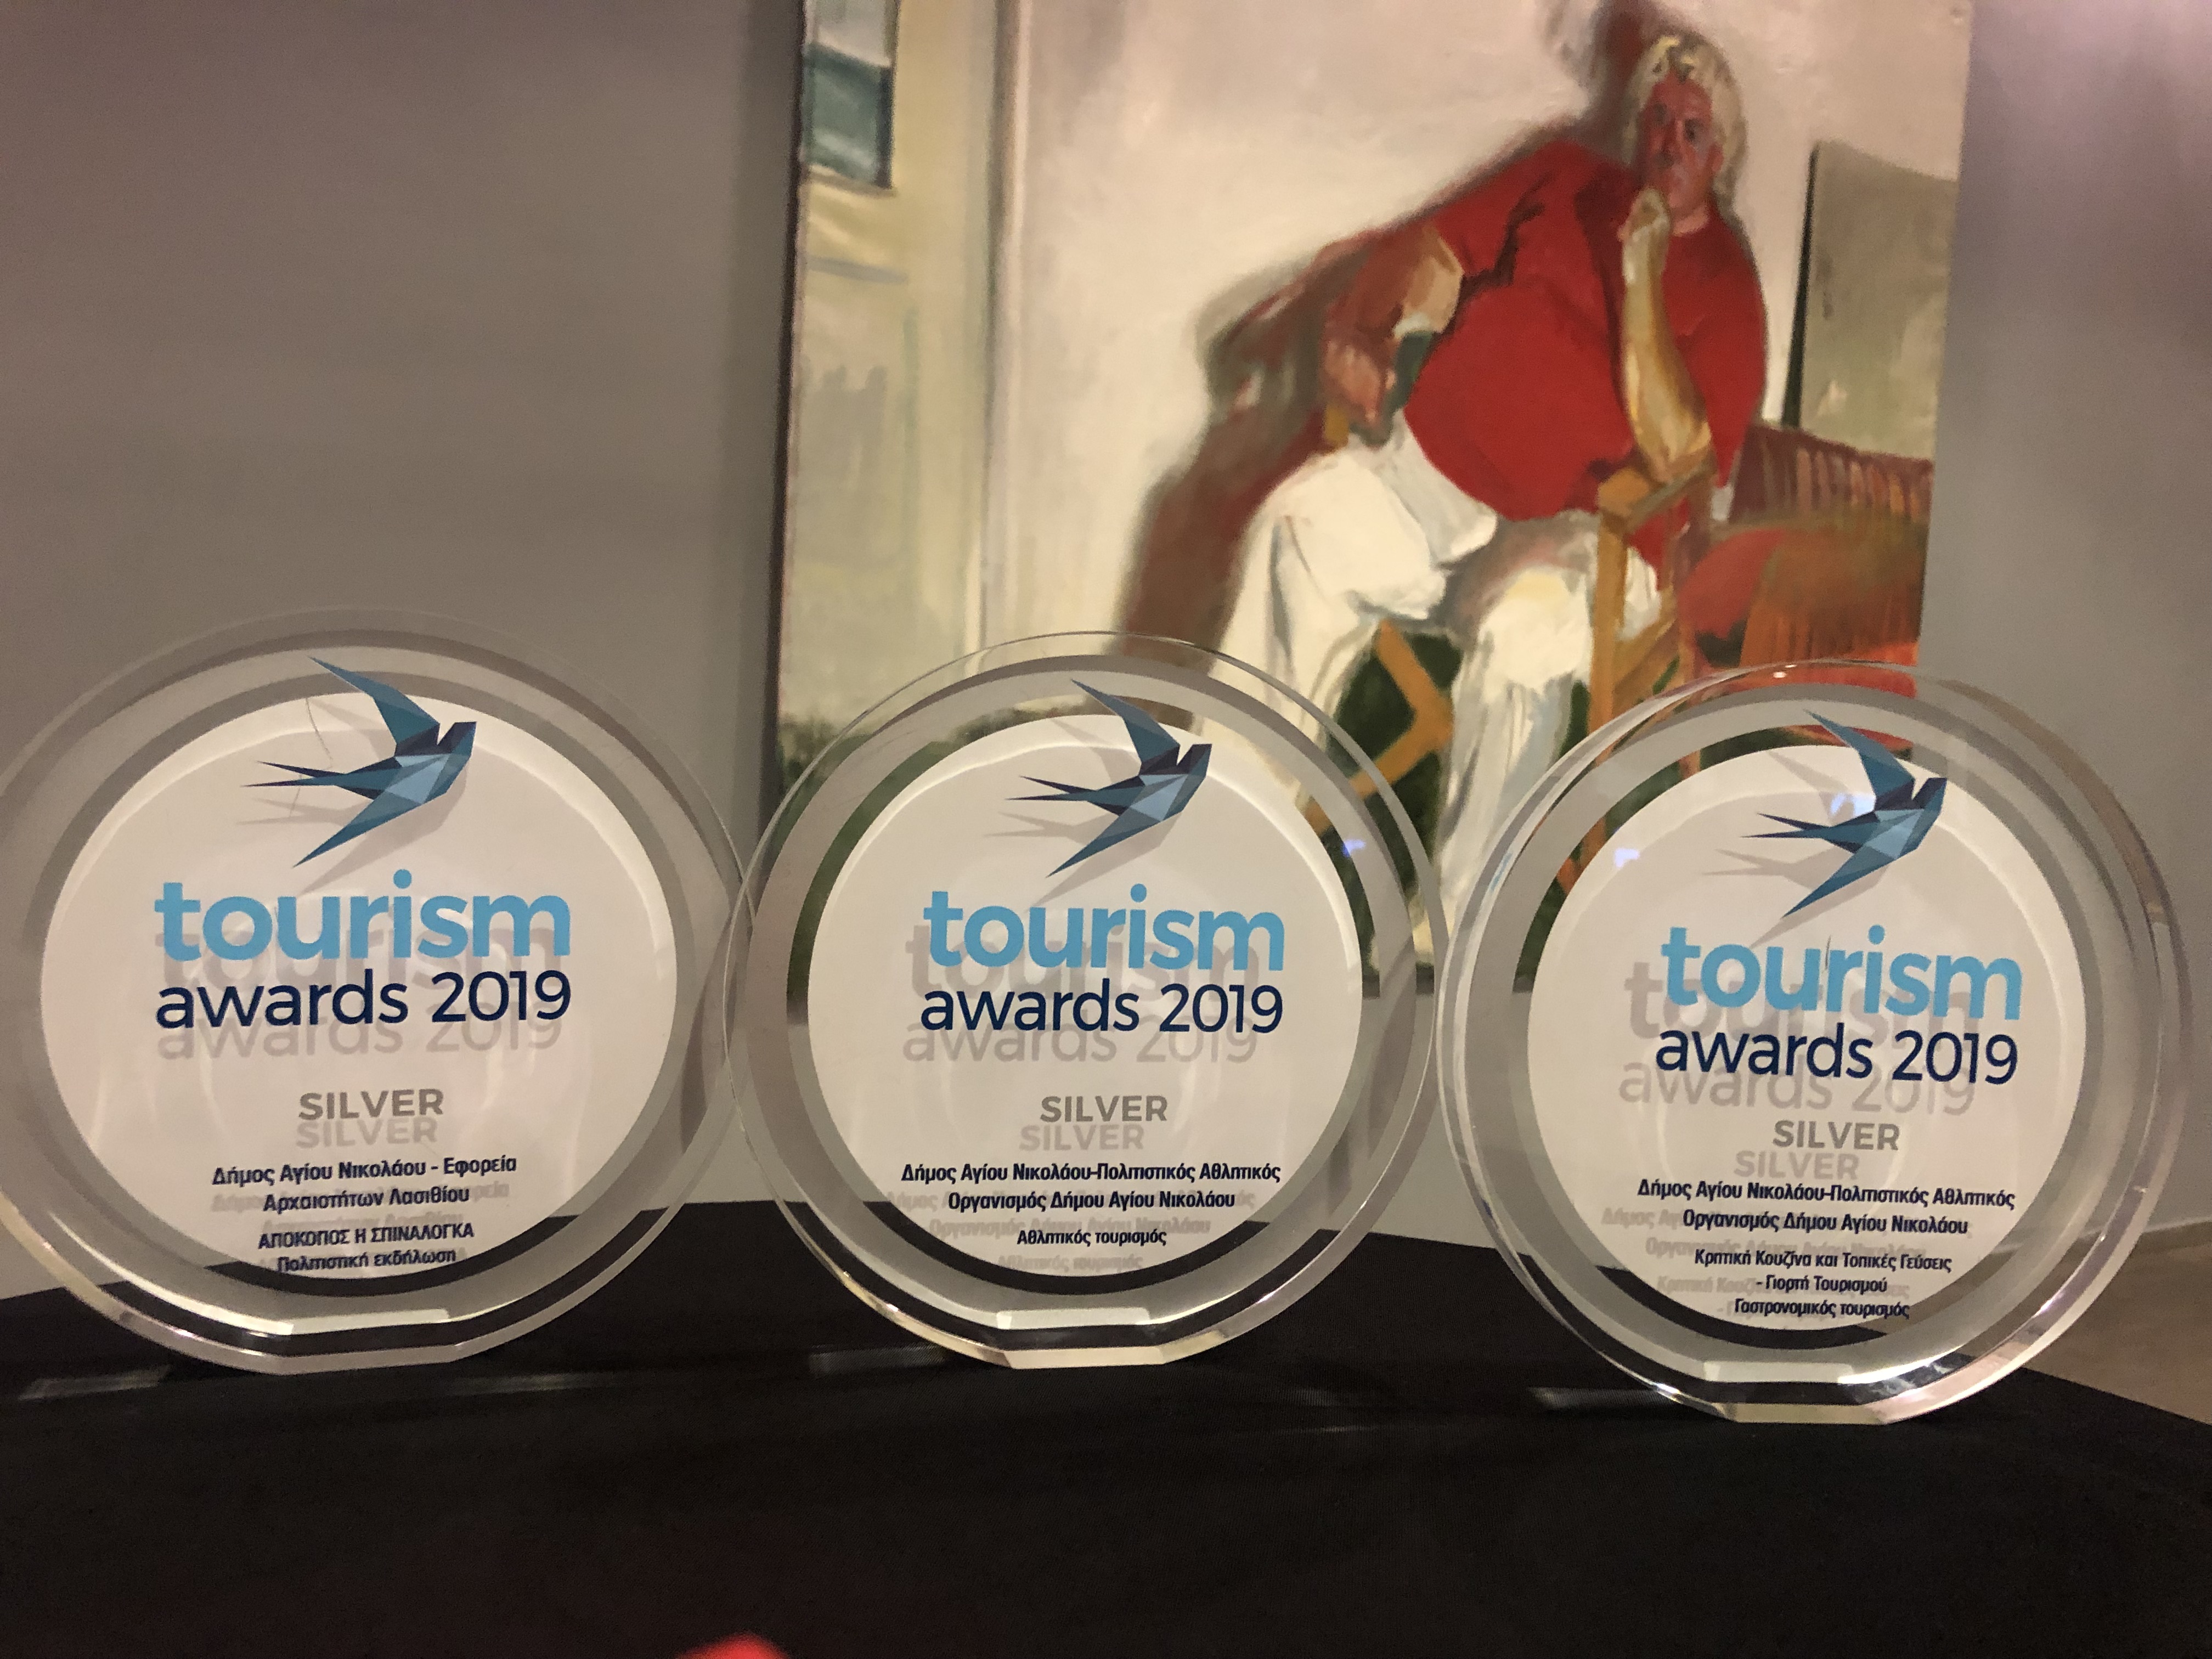 Τέσσερα βραβεία για τον δήμο Αγίου Νικολάου στον φετινό θεσμό “Tourism Awards”